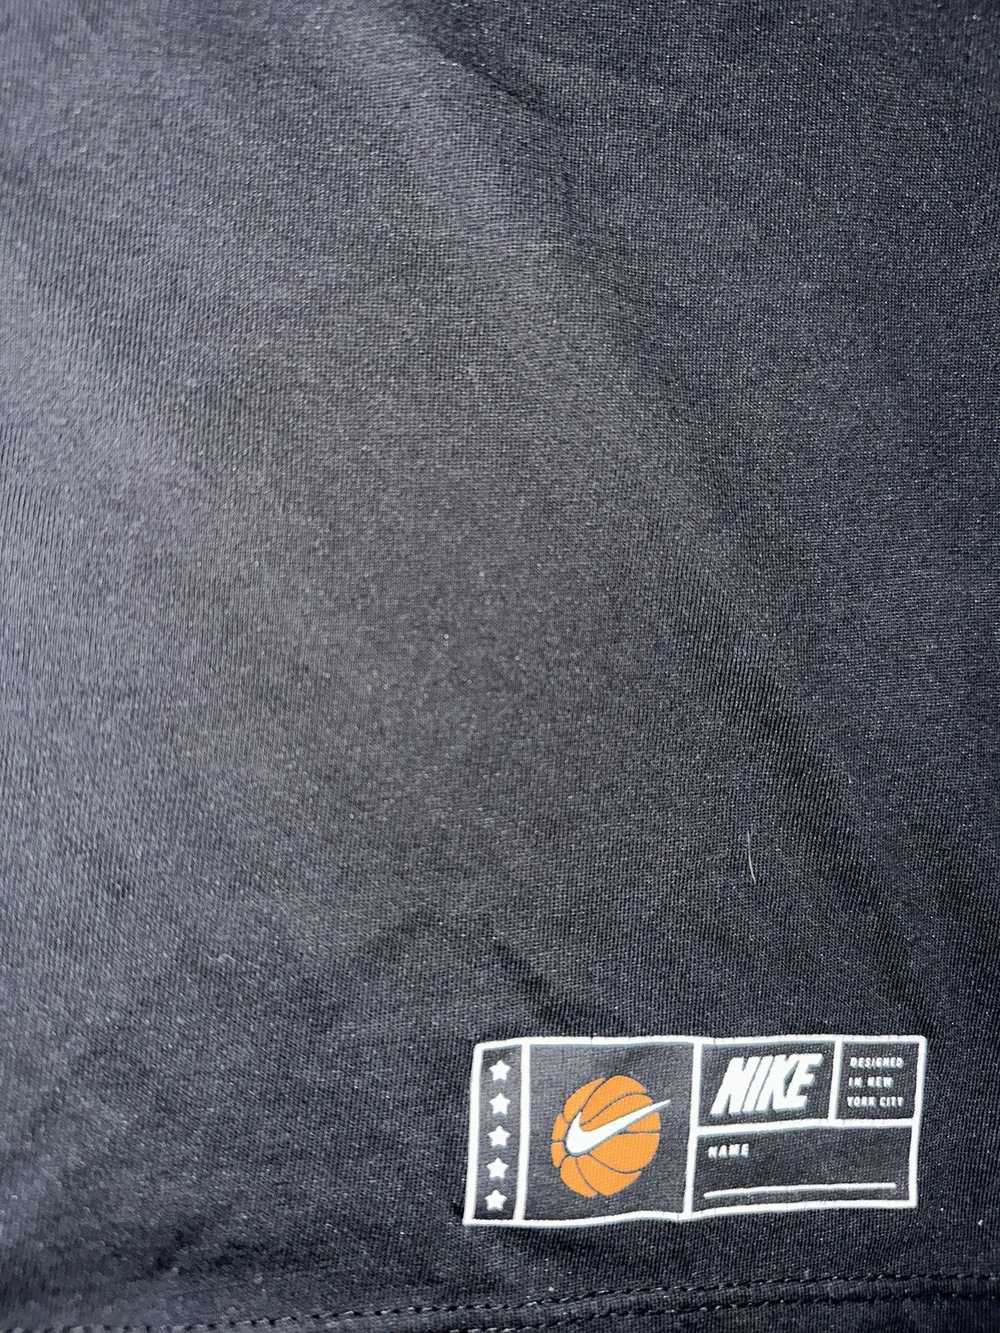 Nike Team USA basketball Nike shirt - image 3